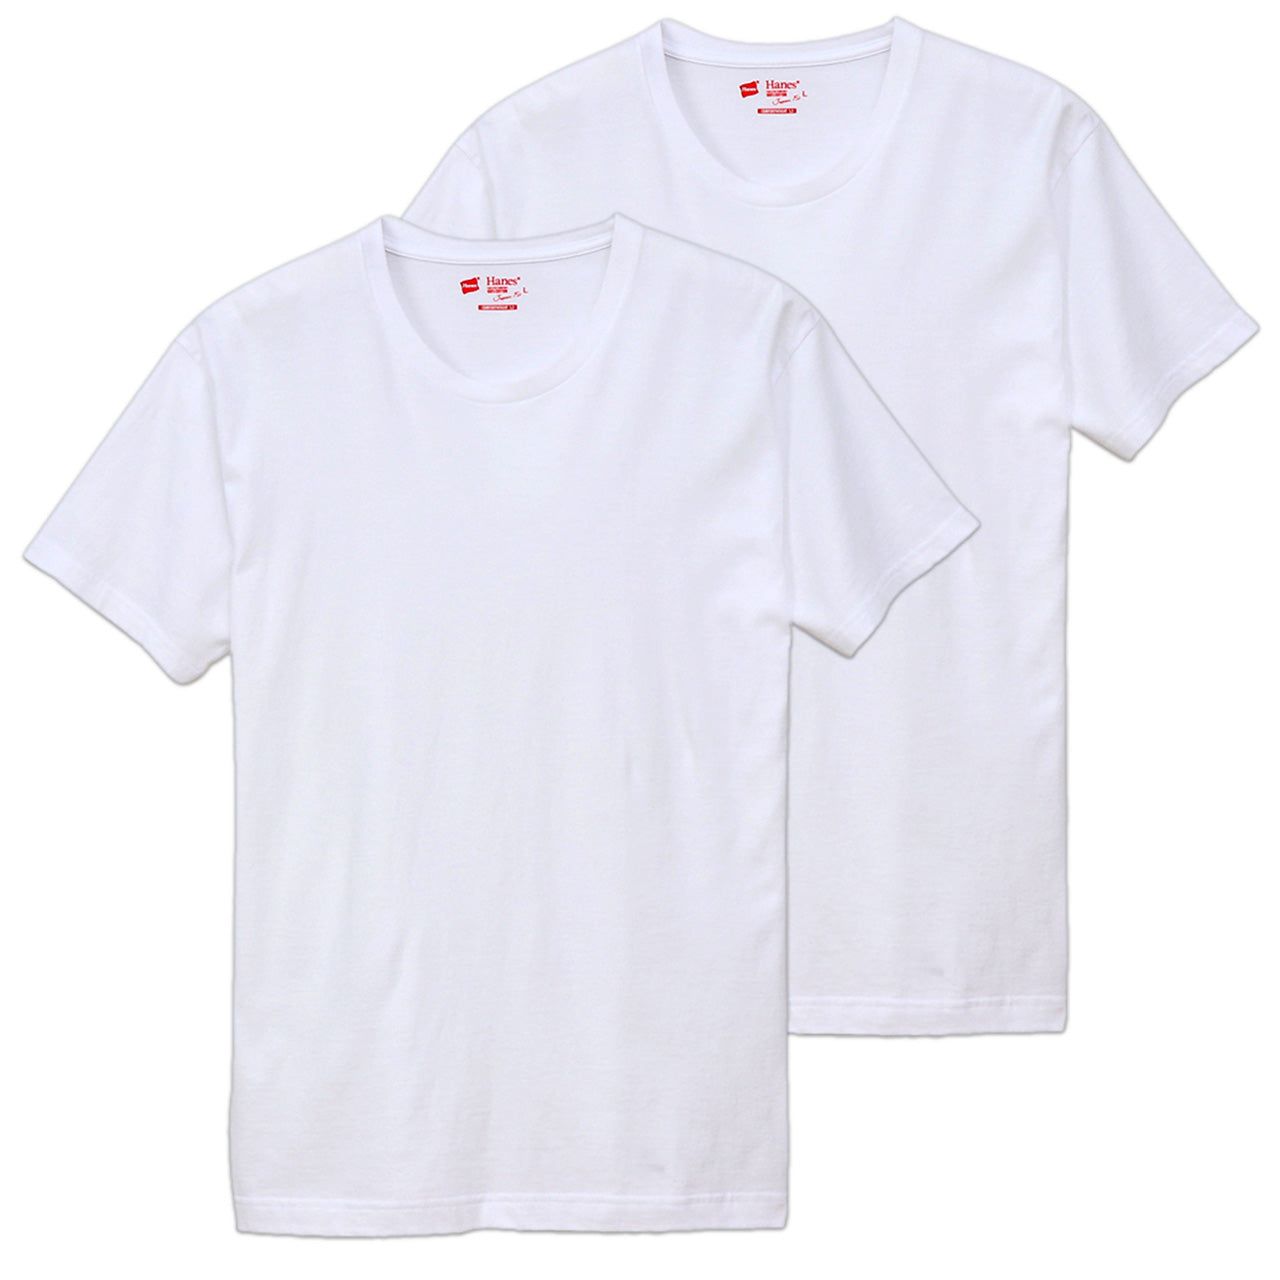 ヘインズ Tシャツ メンズ 半袖 綿100% 2枚組 S～XL (hanes インナー 綿 白 黒 インナーシャツ アンダーウェア 下着 ジャパンフィット)